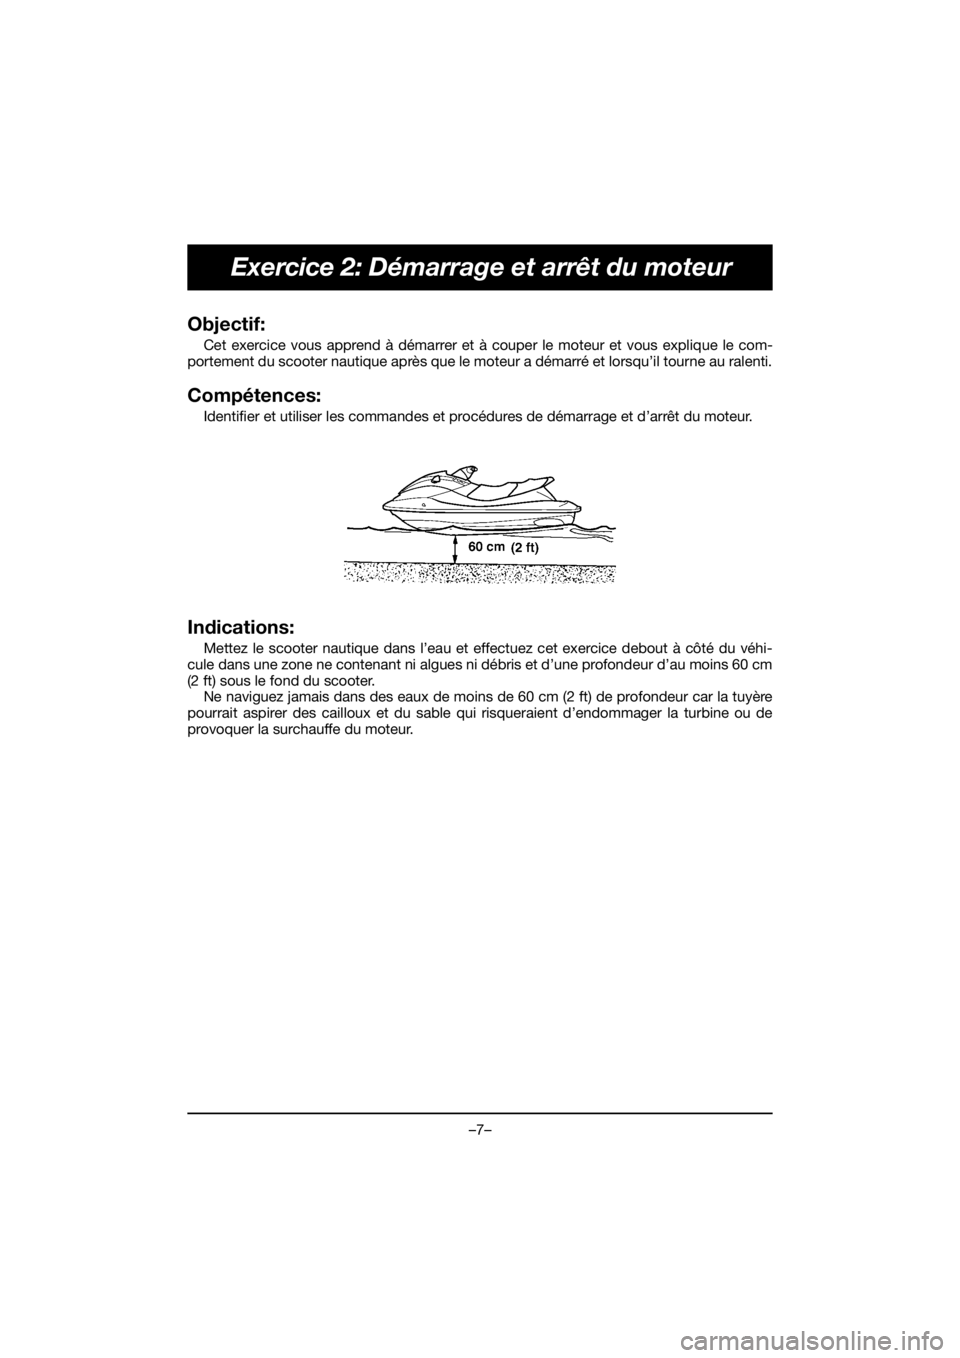 YAMAHA VX DELUXE 2021  Manual de utilização (in Portuguese) –7–
Exercice 2: Démarrage et arrêt du moteur
Objectif: 
Cet exercice vous apprend à démarrer et à couper le moteur et vous explique le com-
portement du scooter nautique après que le moteur 